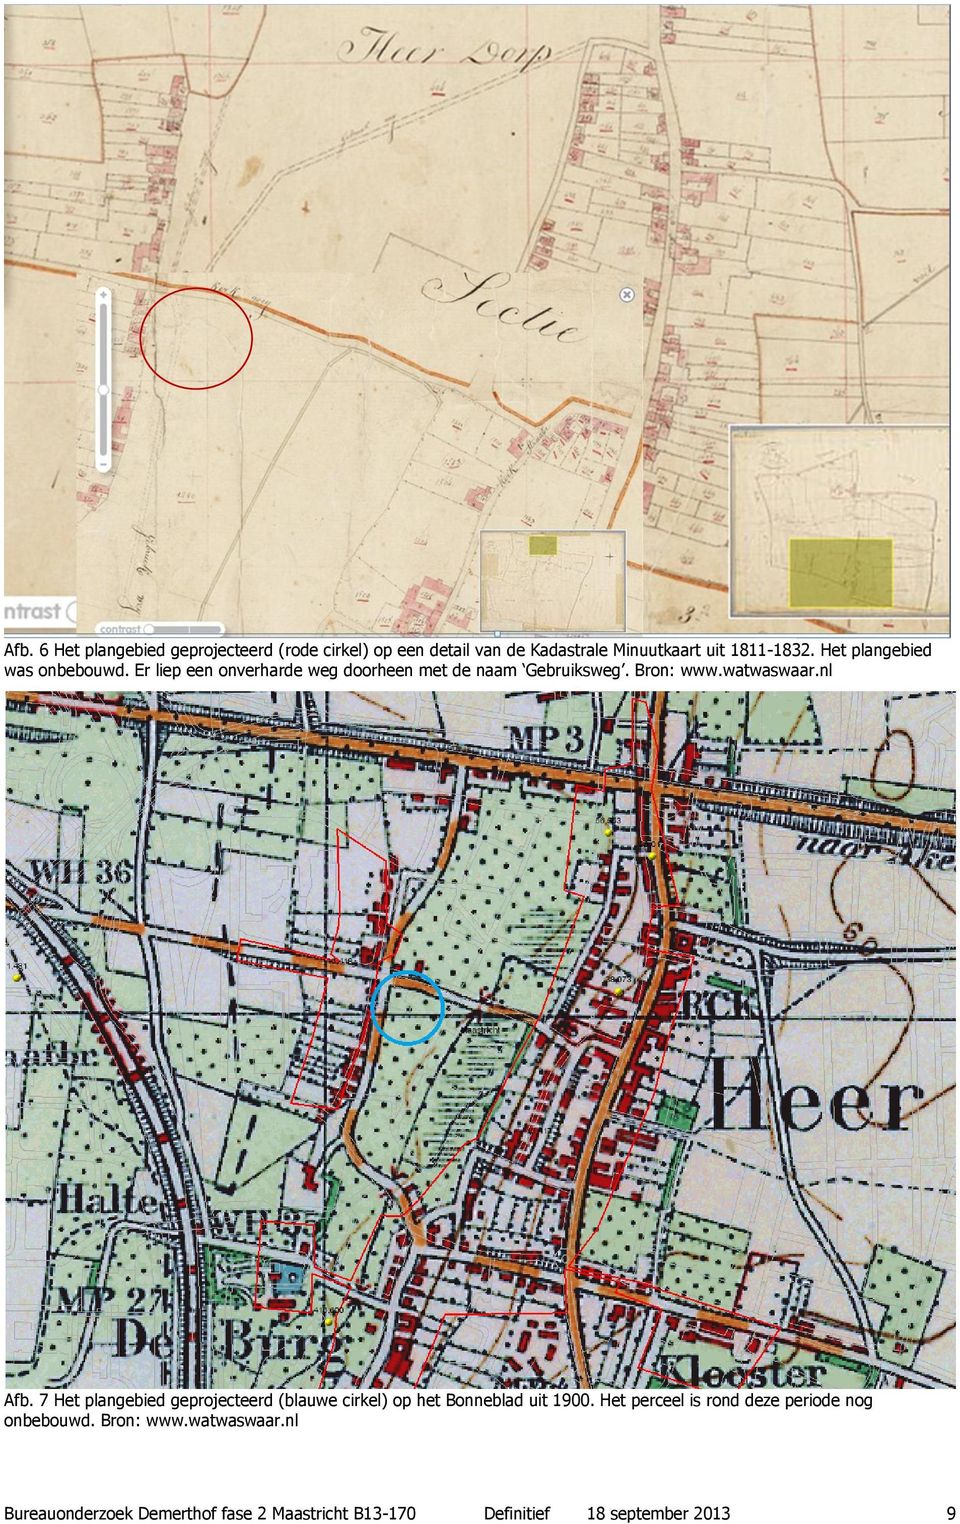 nl Afb. 7 Het plangebied geprojecteerd (blauwe cirkel) op het Bonneblad uit 1900.